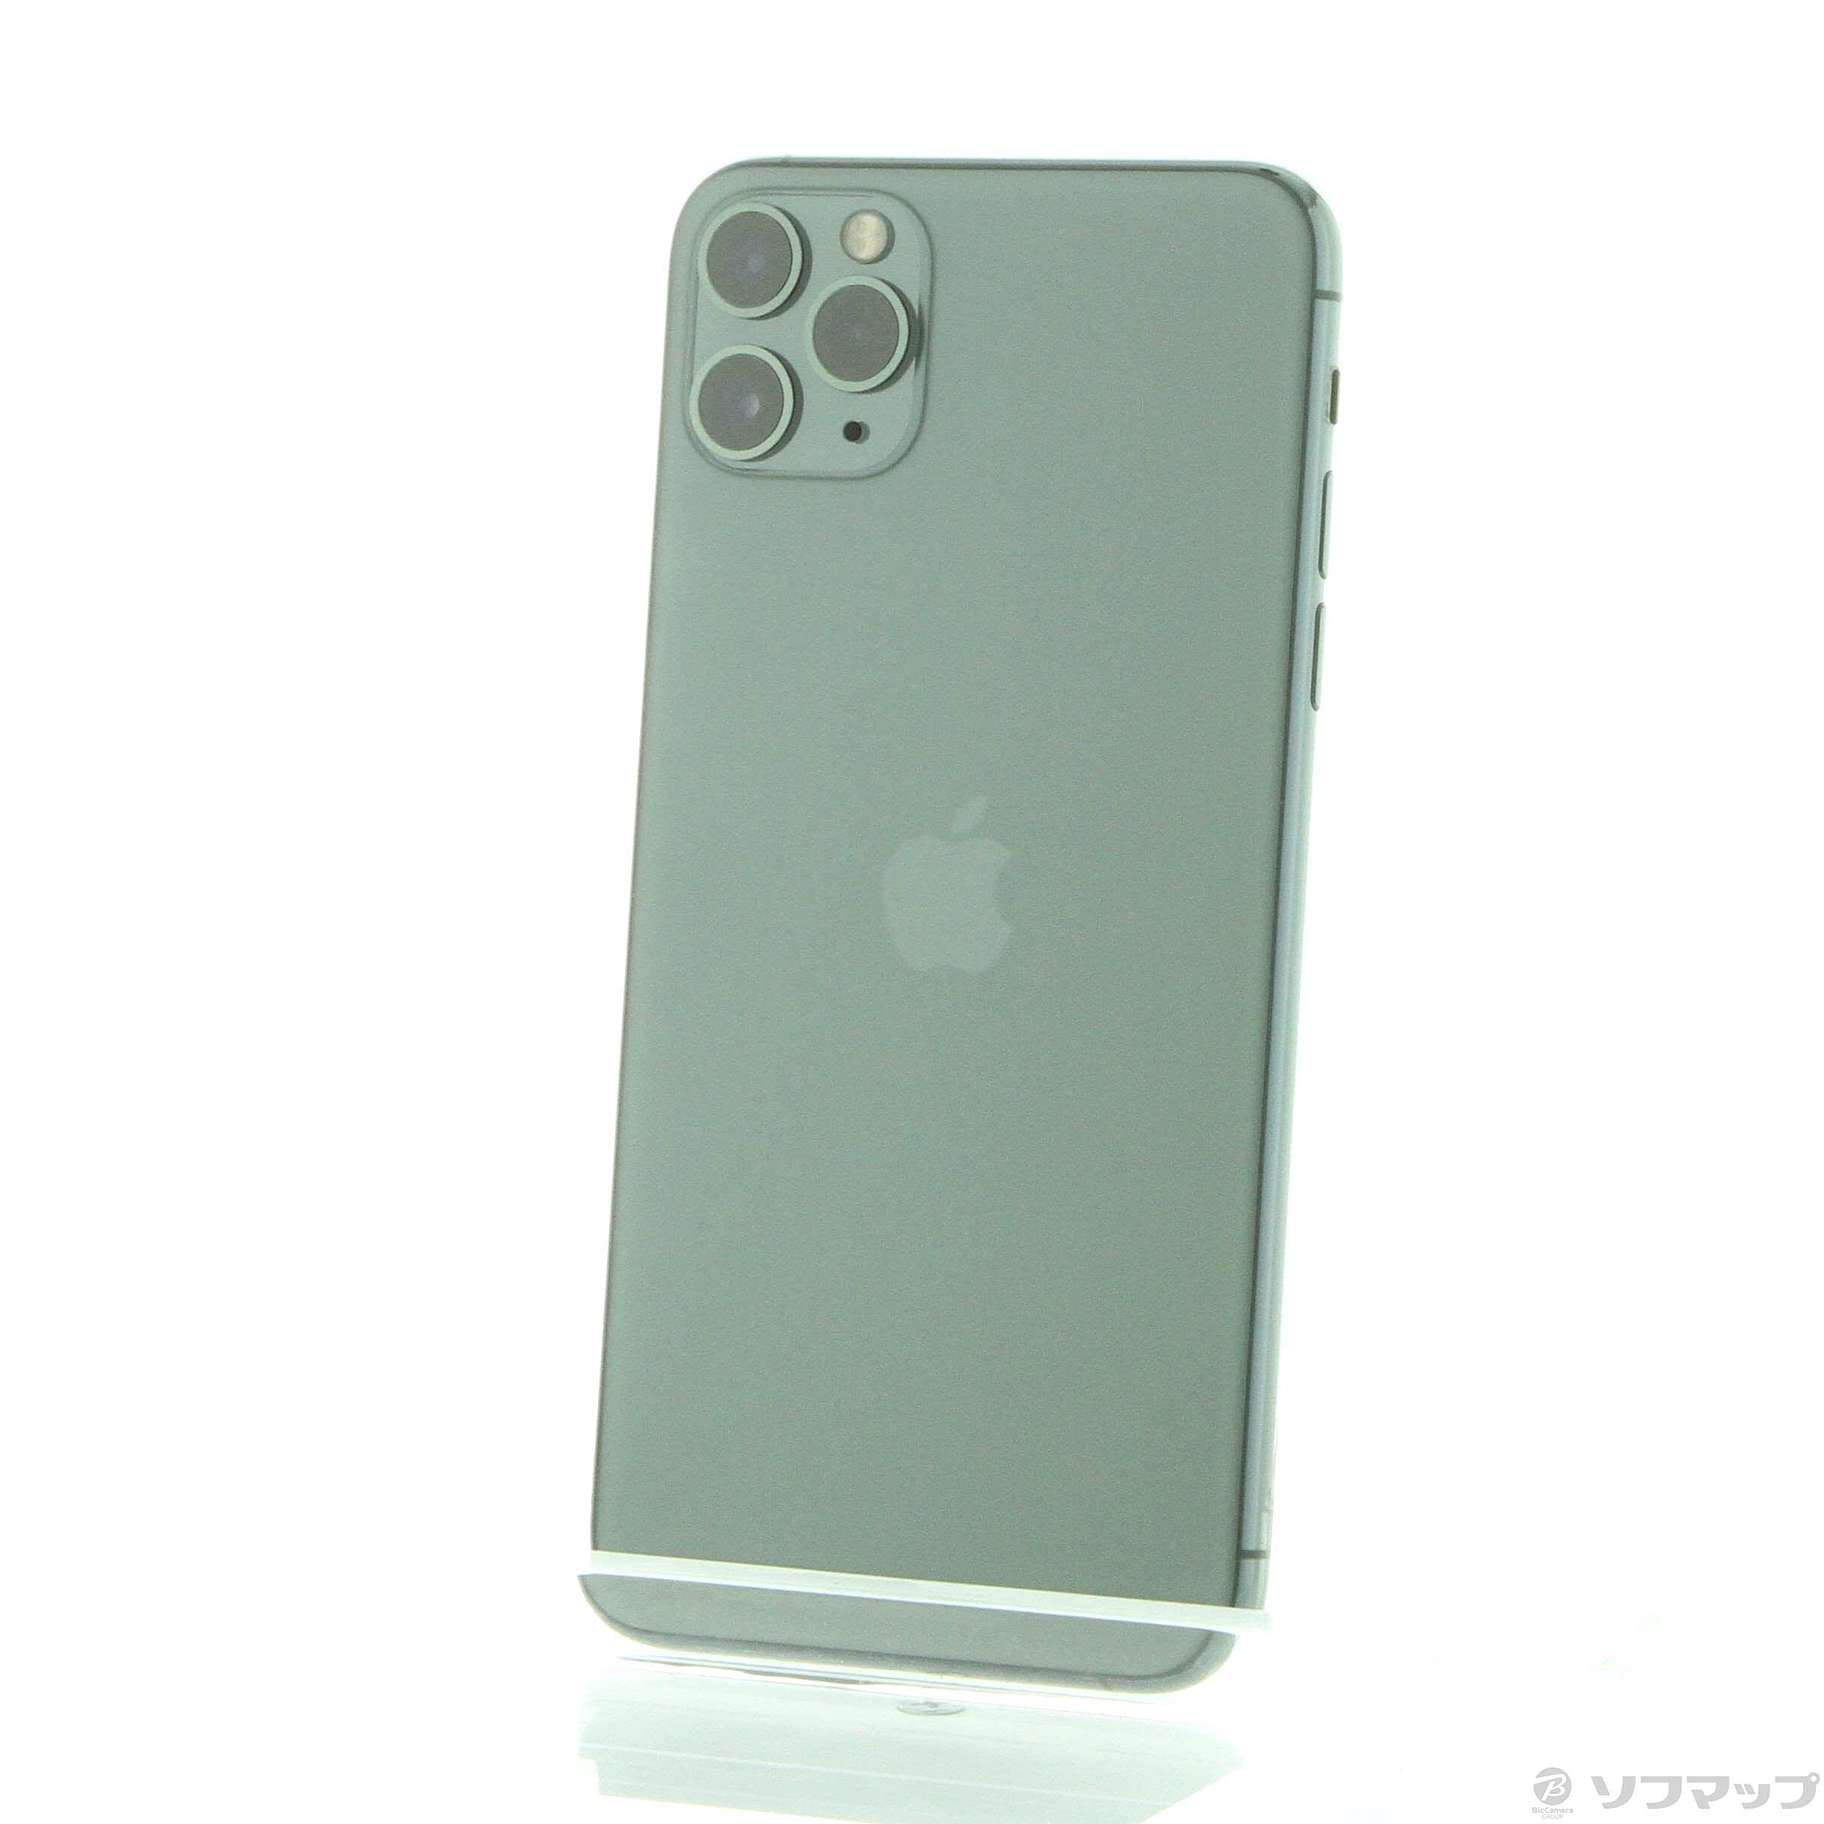 箱付き】iPhone11 Pro 64GB SIMフリー ミッドナイトグリーン-